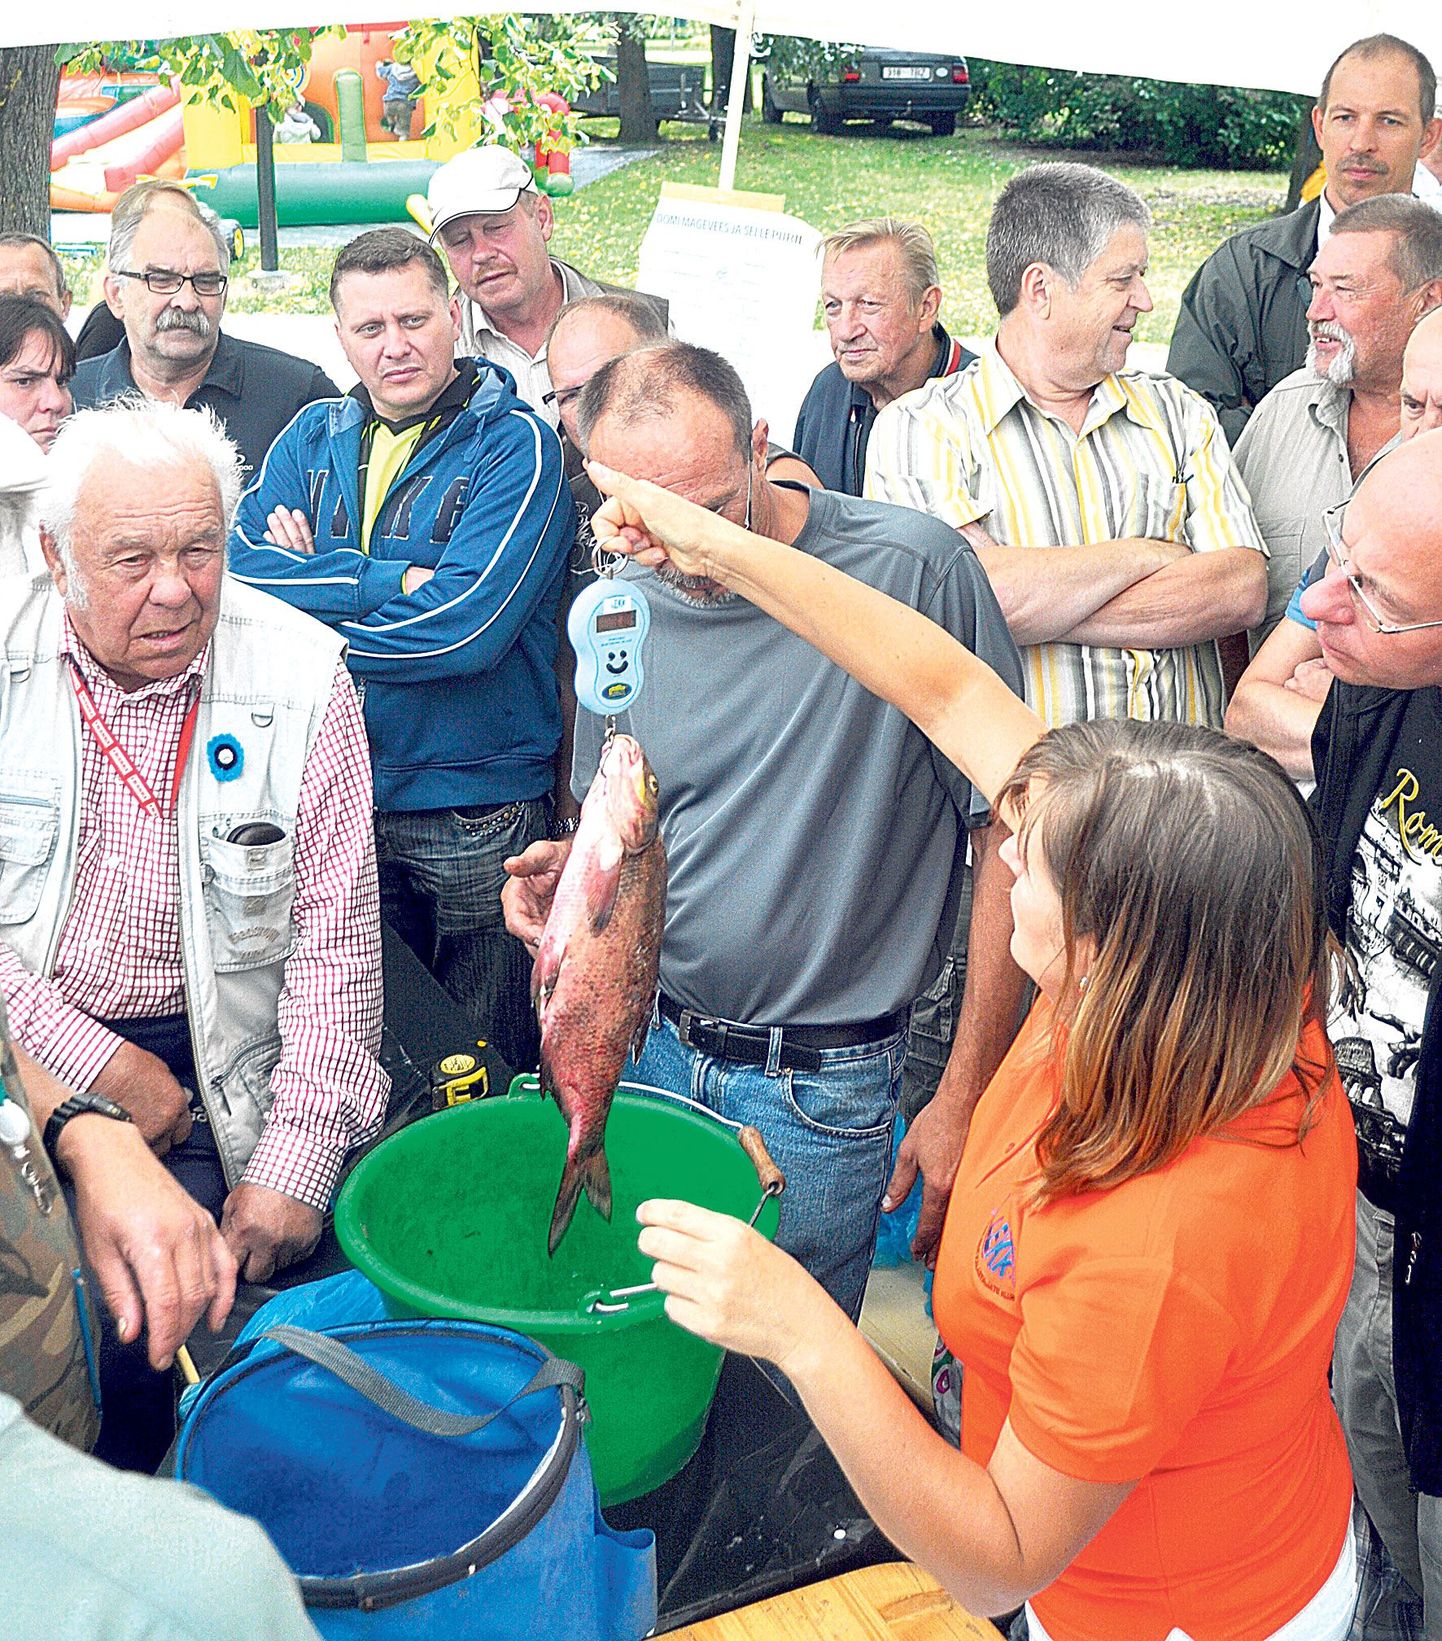 Laupäeval lõppenud Emajõe festivalil selgitati muu hulgas välja kõige osavamad kalamehed.